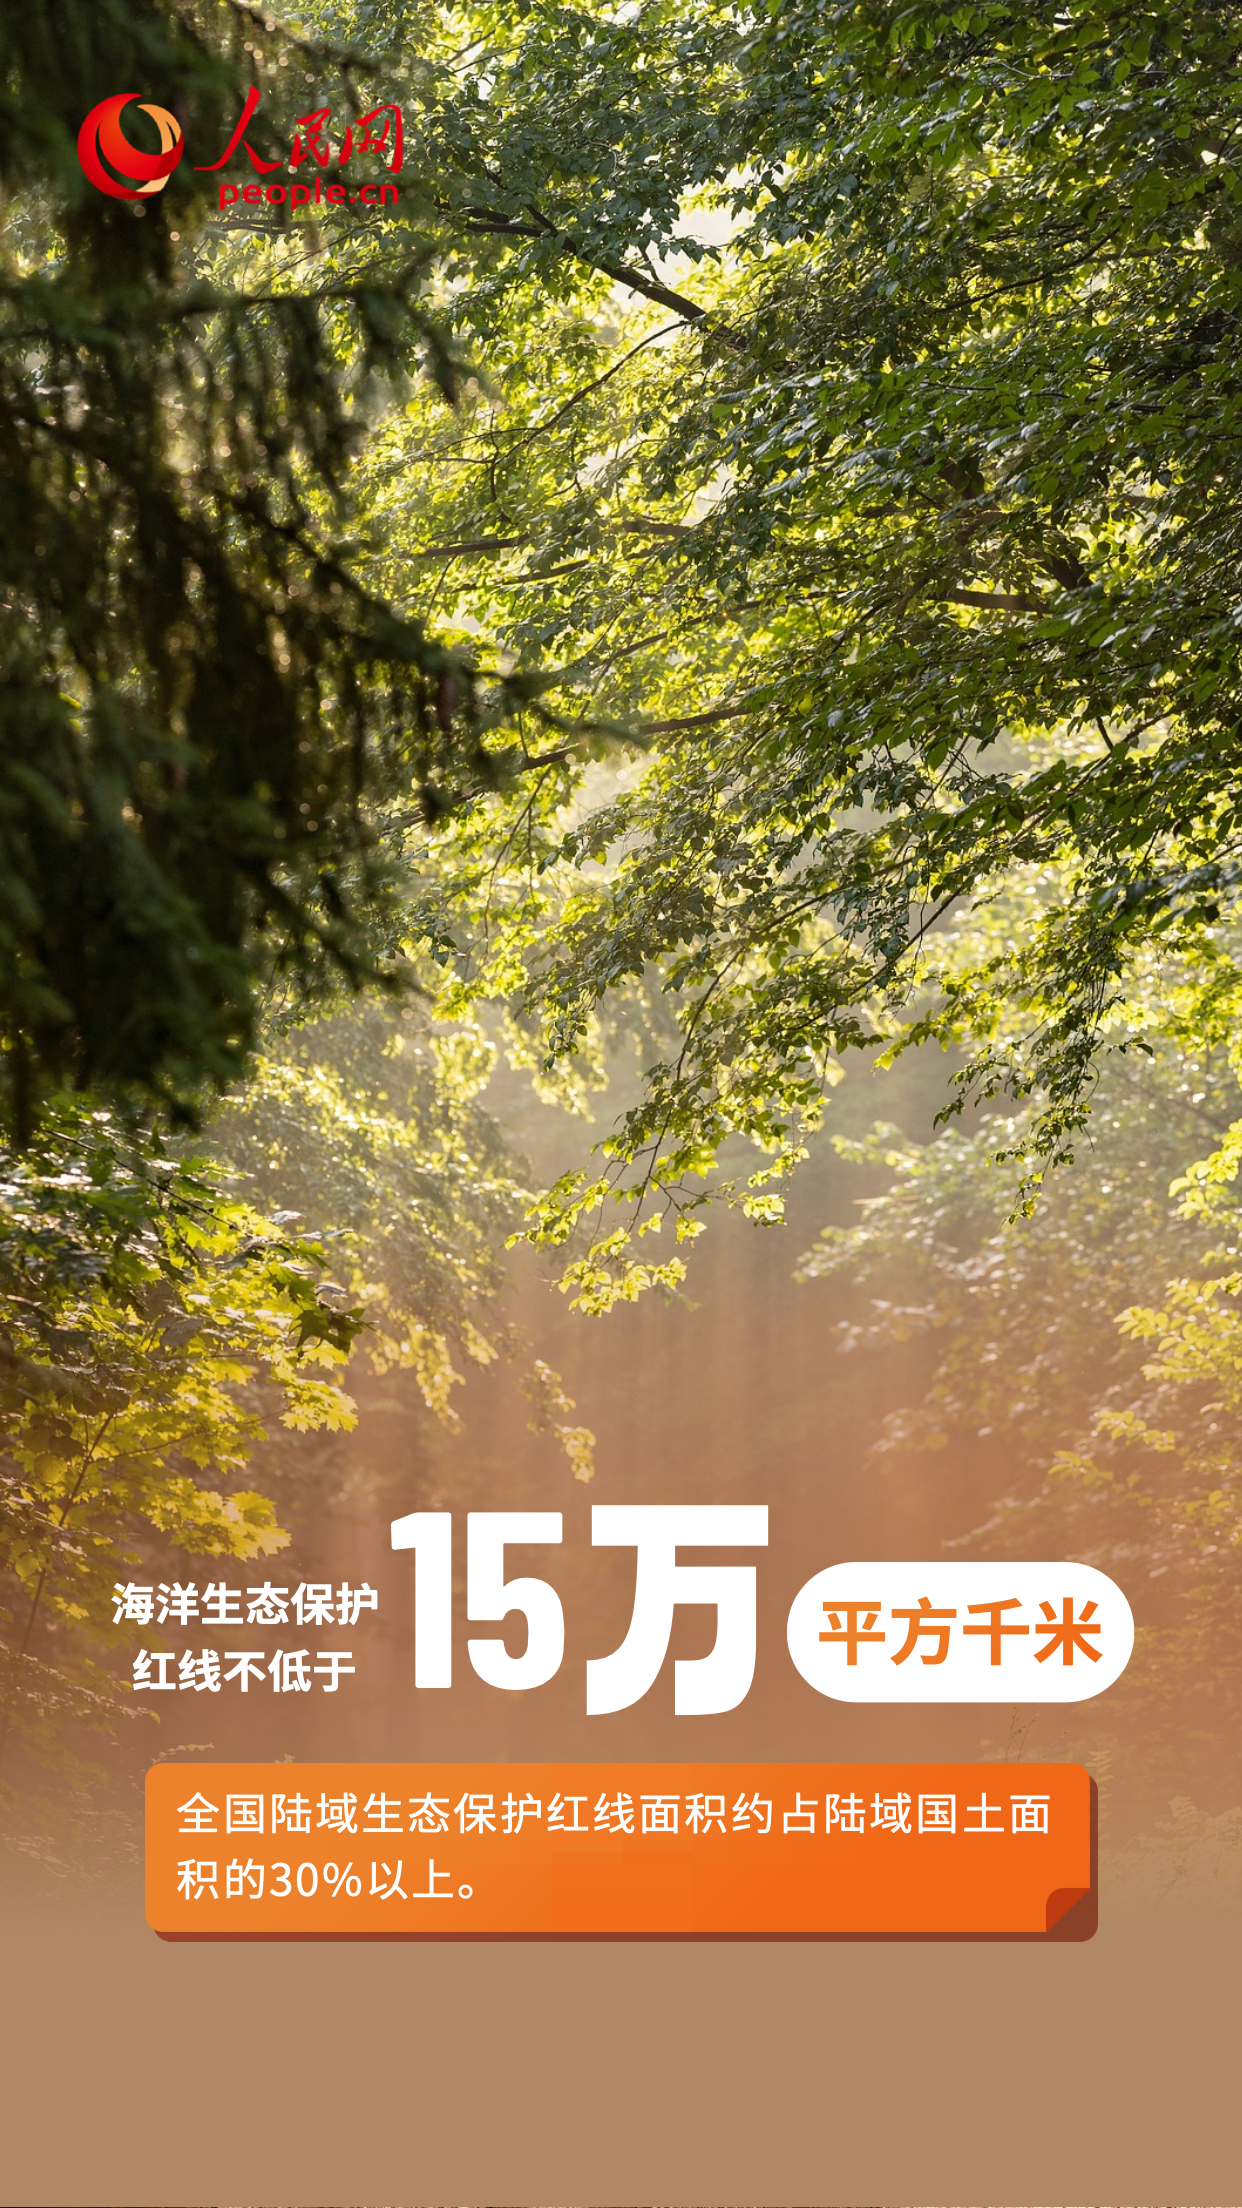 6·5環境日特別策劃|守護藍天碧水淨土 繪就生態環境保護新畫卷【5】